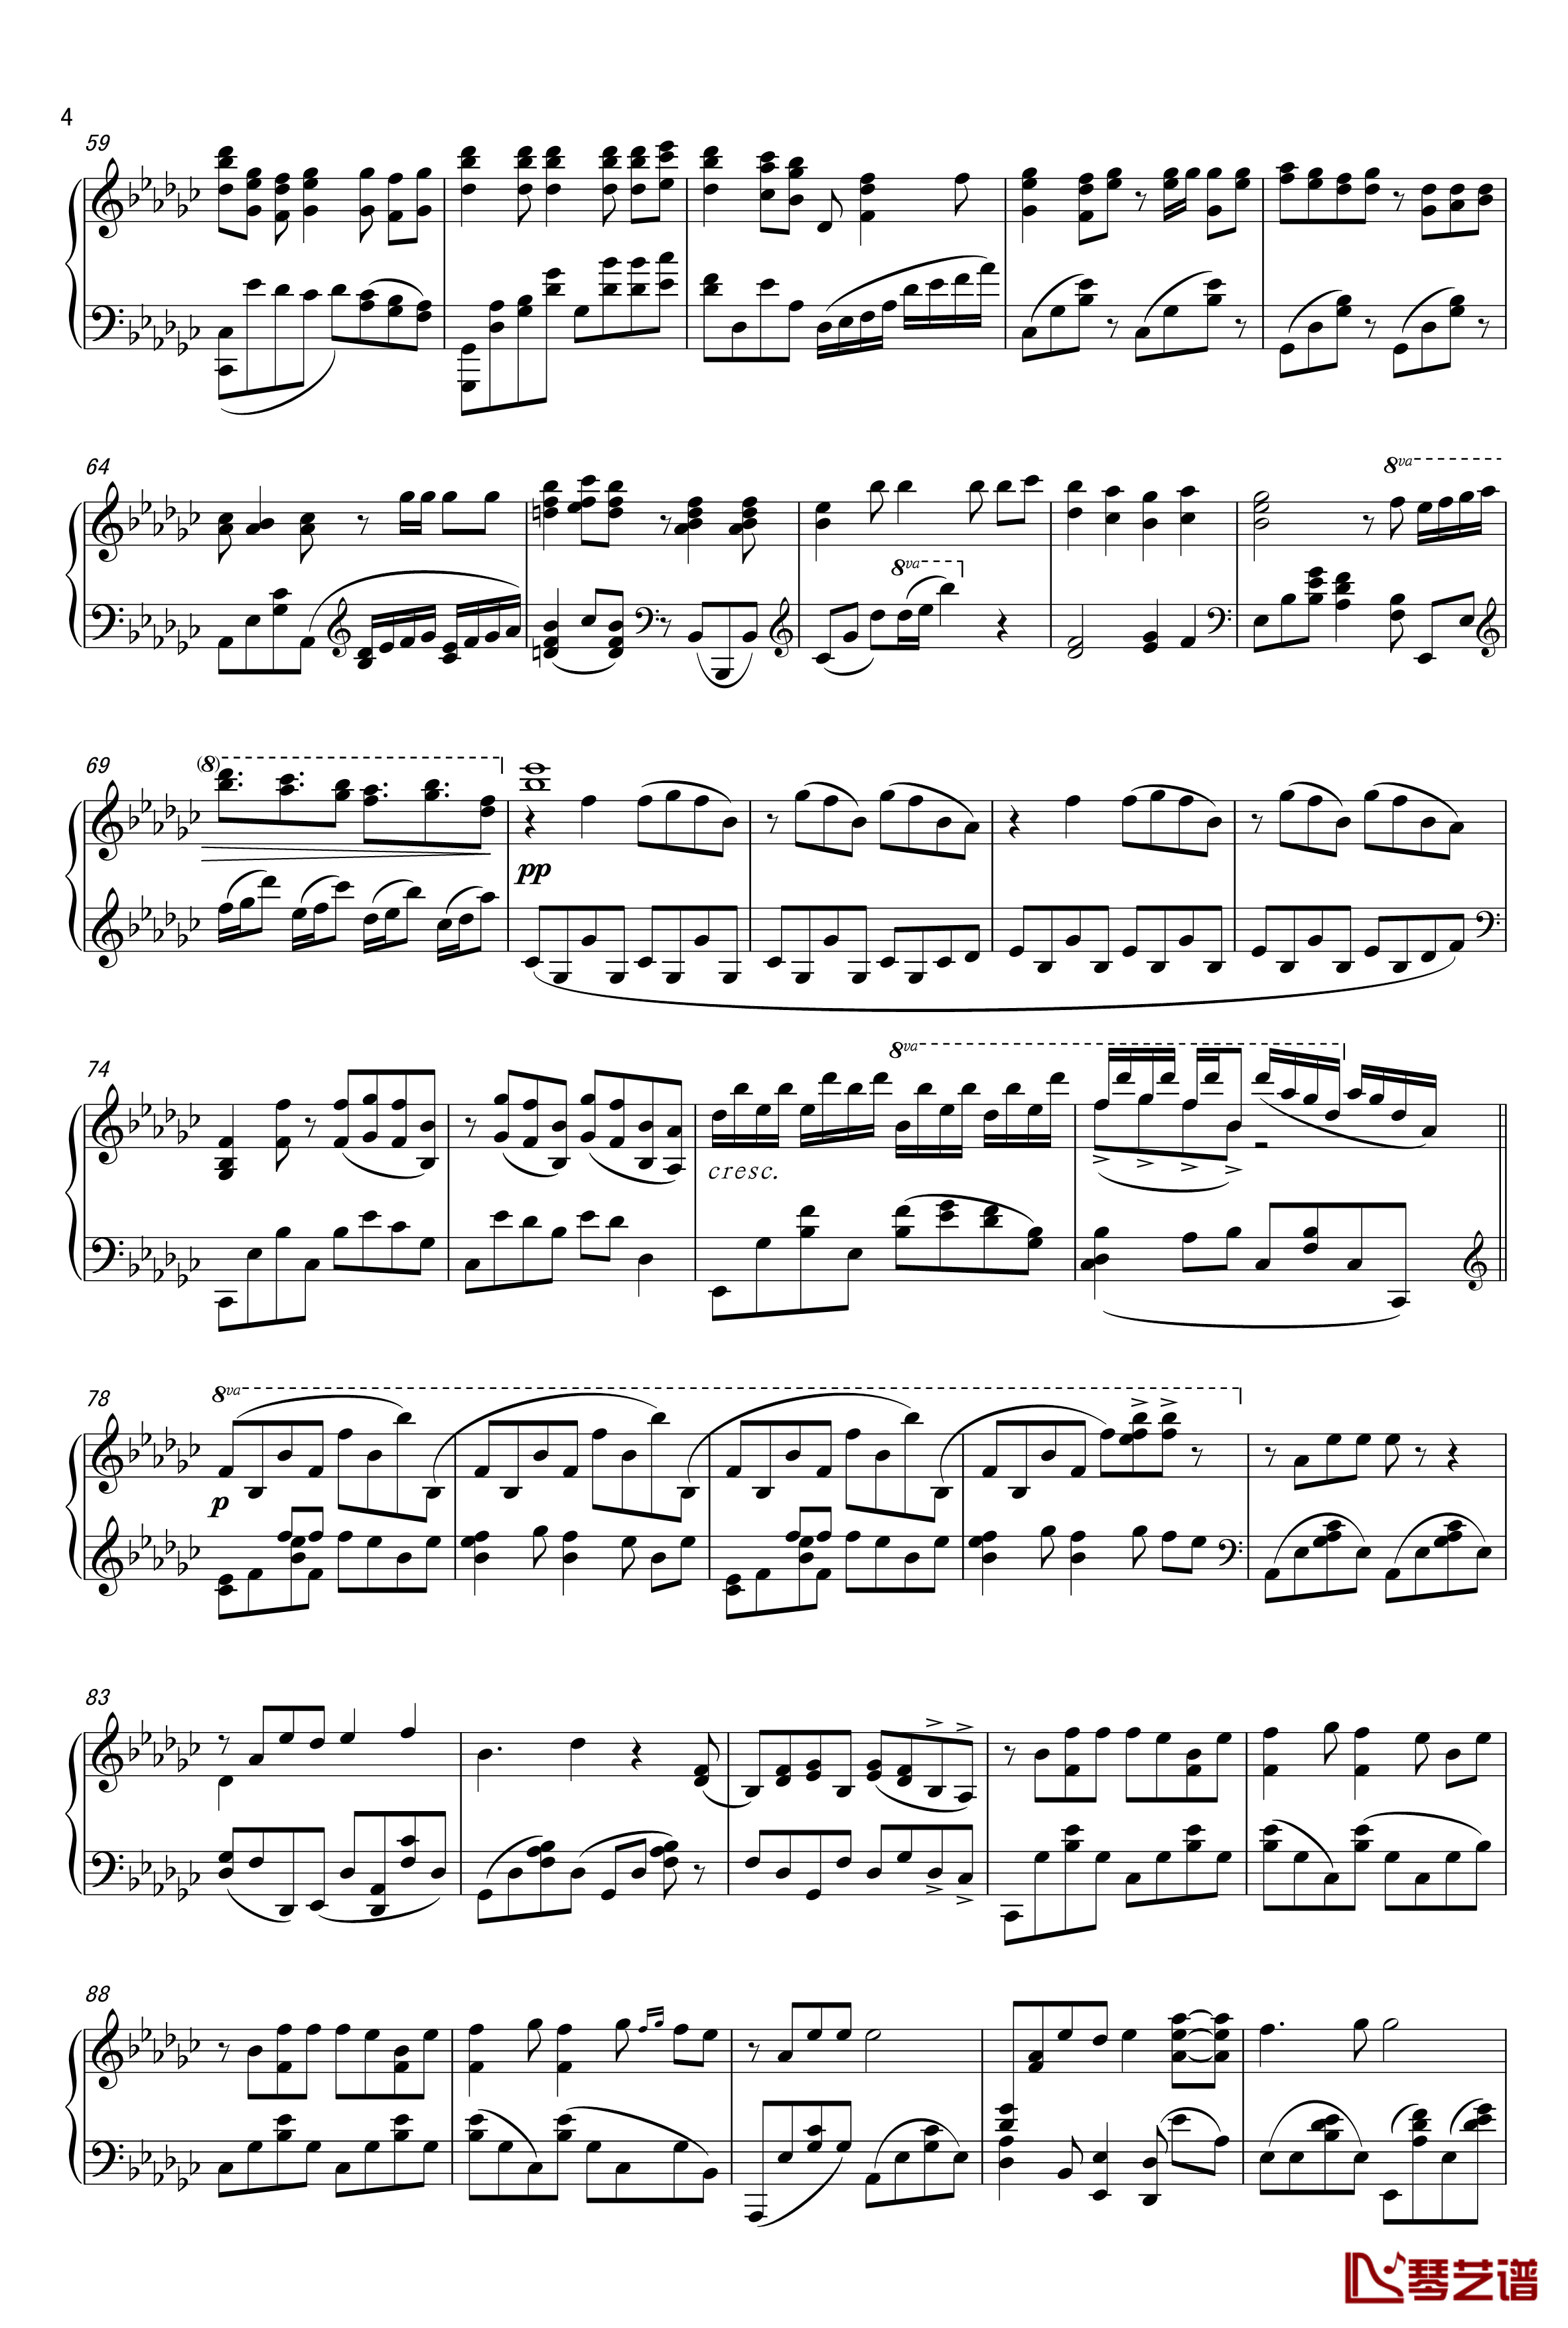 ロミオとシンデレラ钢琴谱-初音未来4